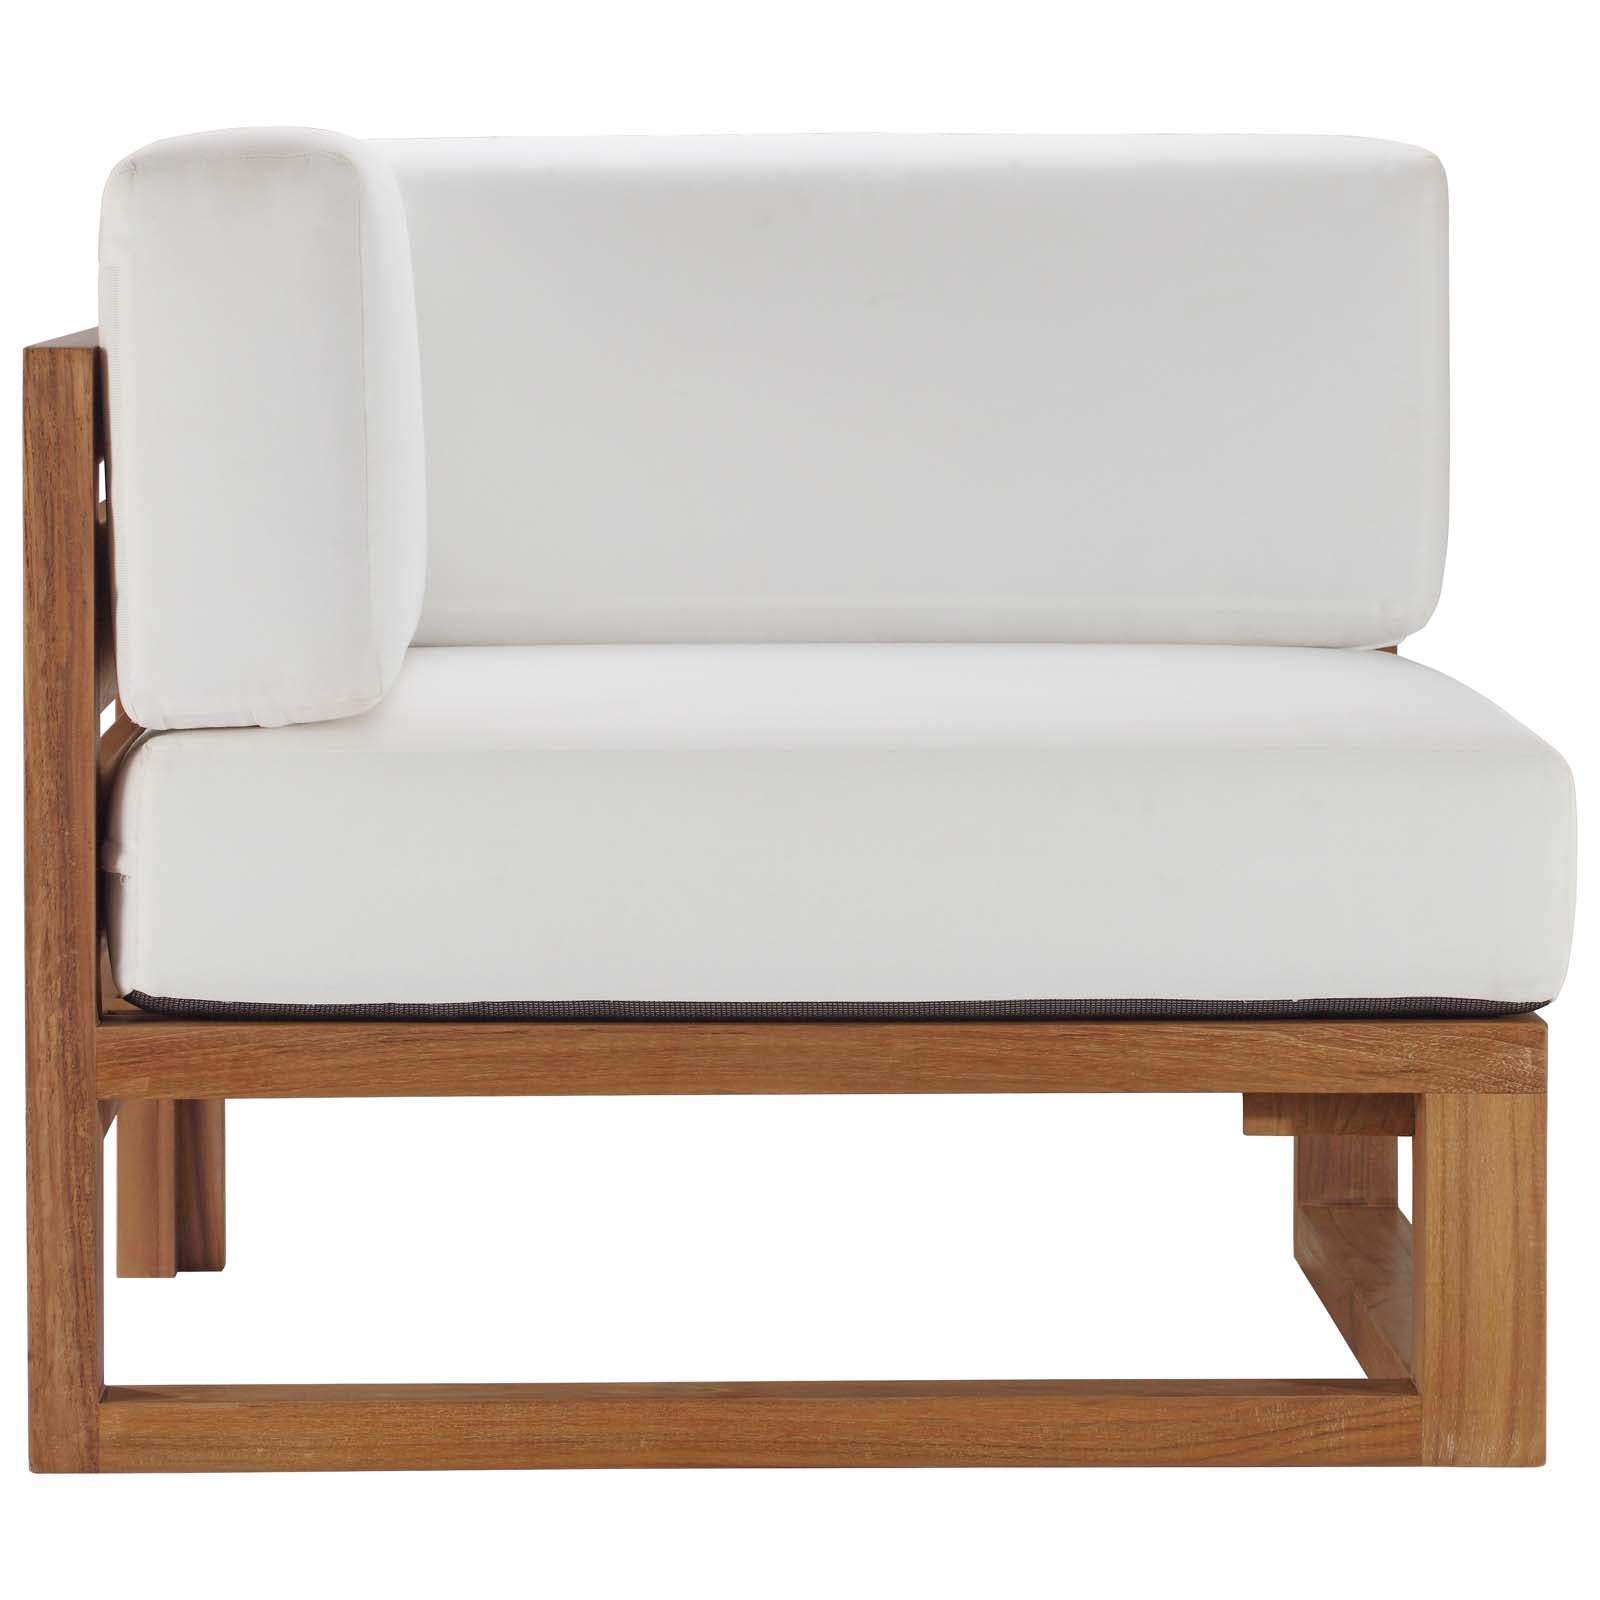 Upland Outdoor Patio Teak Wood 4-Piece Sectional Sofa Set